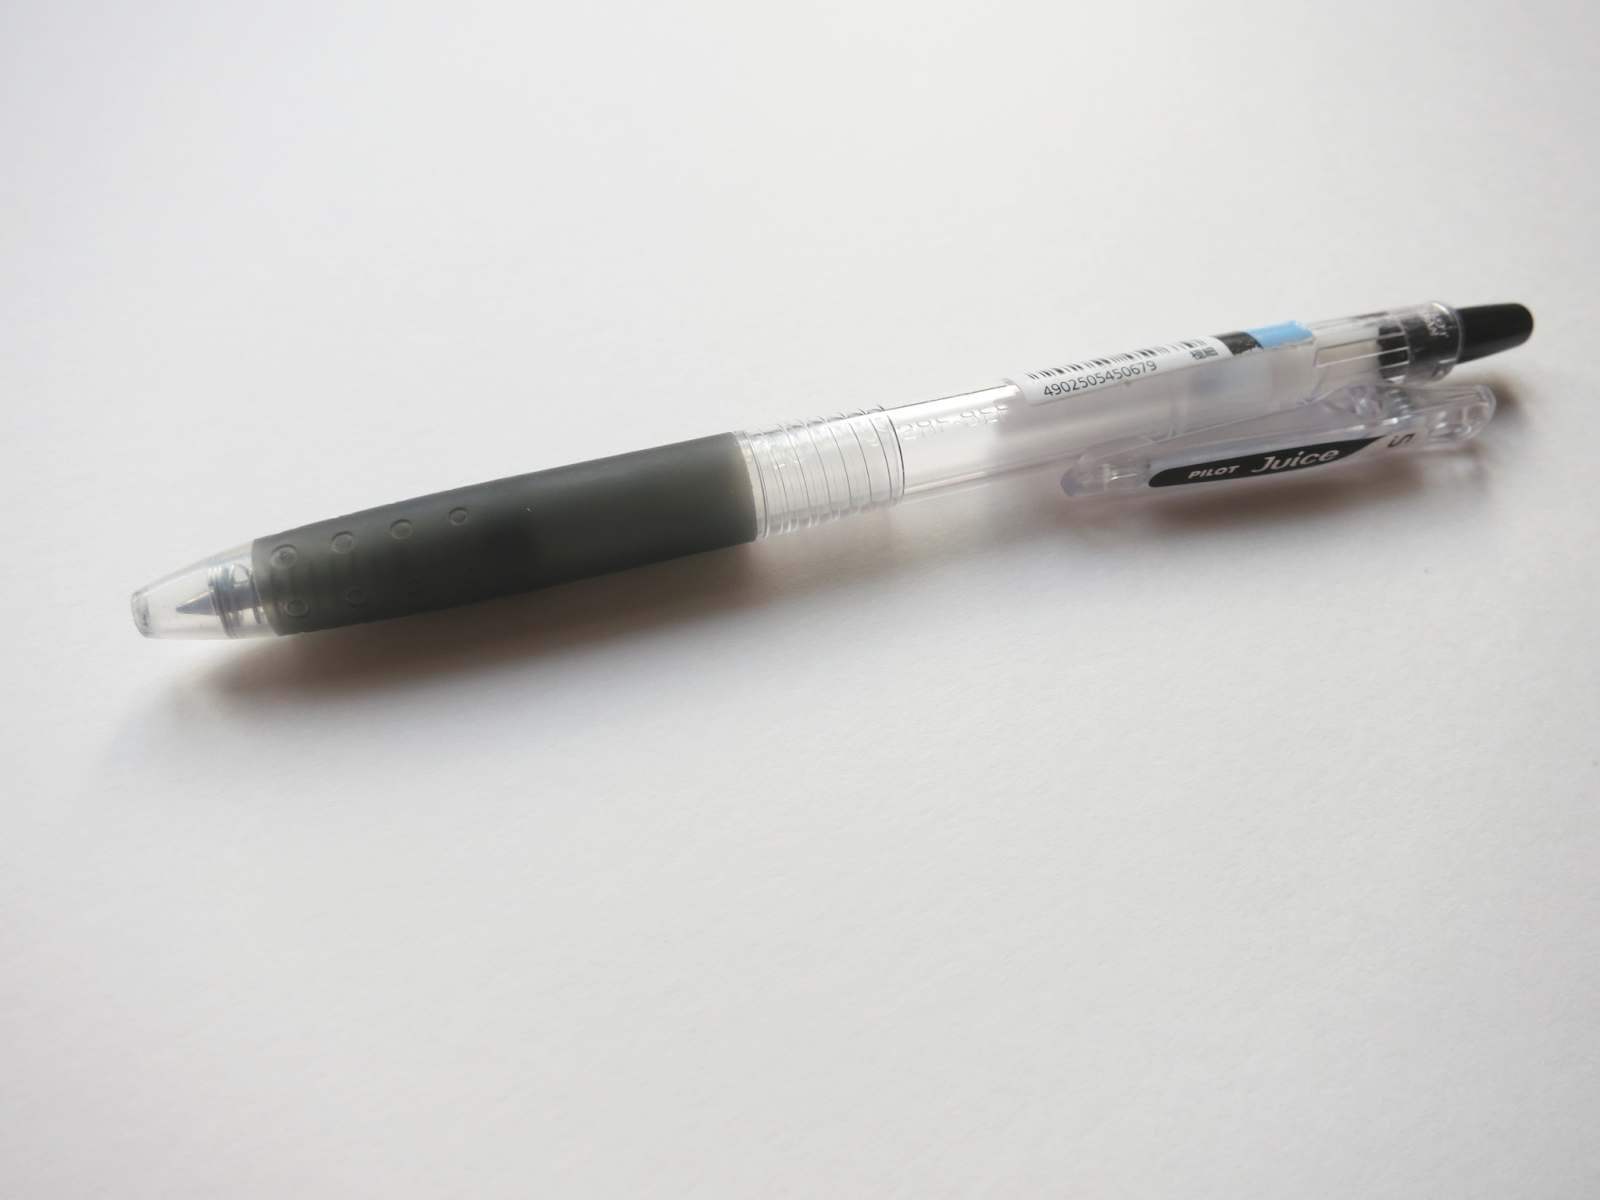 Pen Review: Pilot Juice 6-Color Metallic & Pastel Sets (with Bonus White  Gel Pen Comparison) - The Well-Appointed Desk